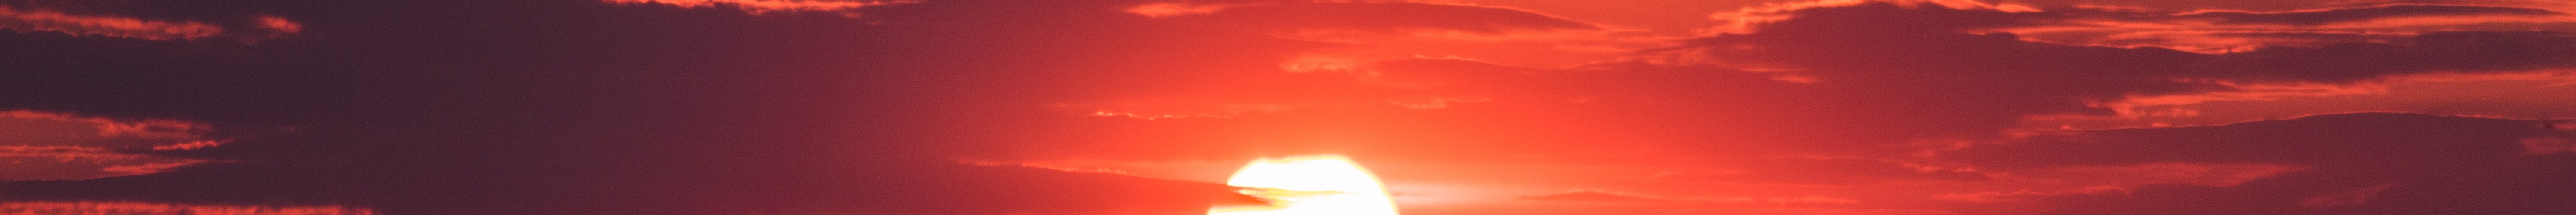 A blood red sunset. Photo by Jason Blackeye at Unsplash.